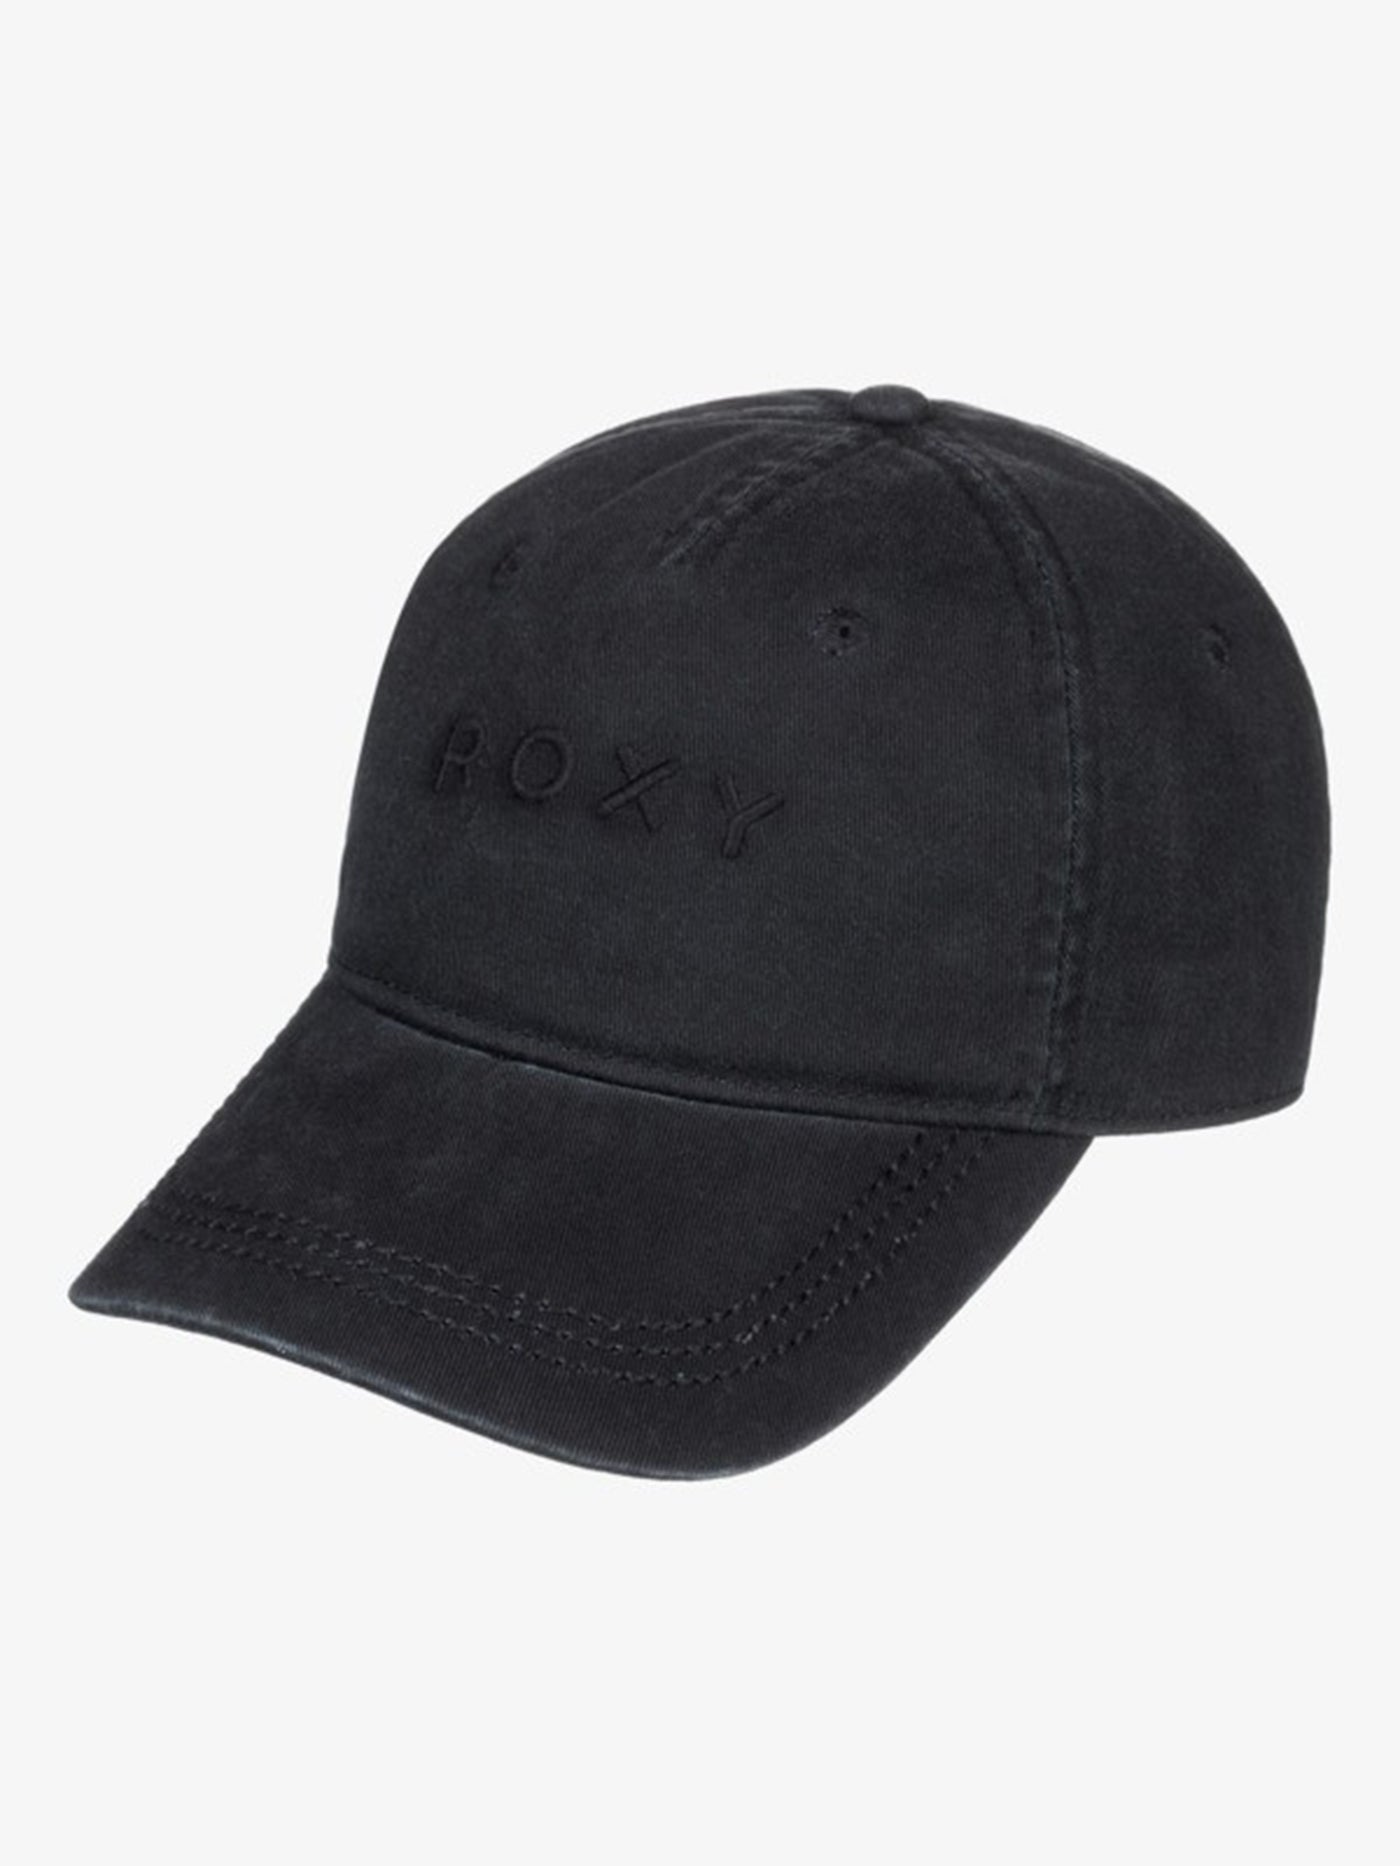 Roxy Dear Believer Strapback Hat